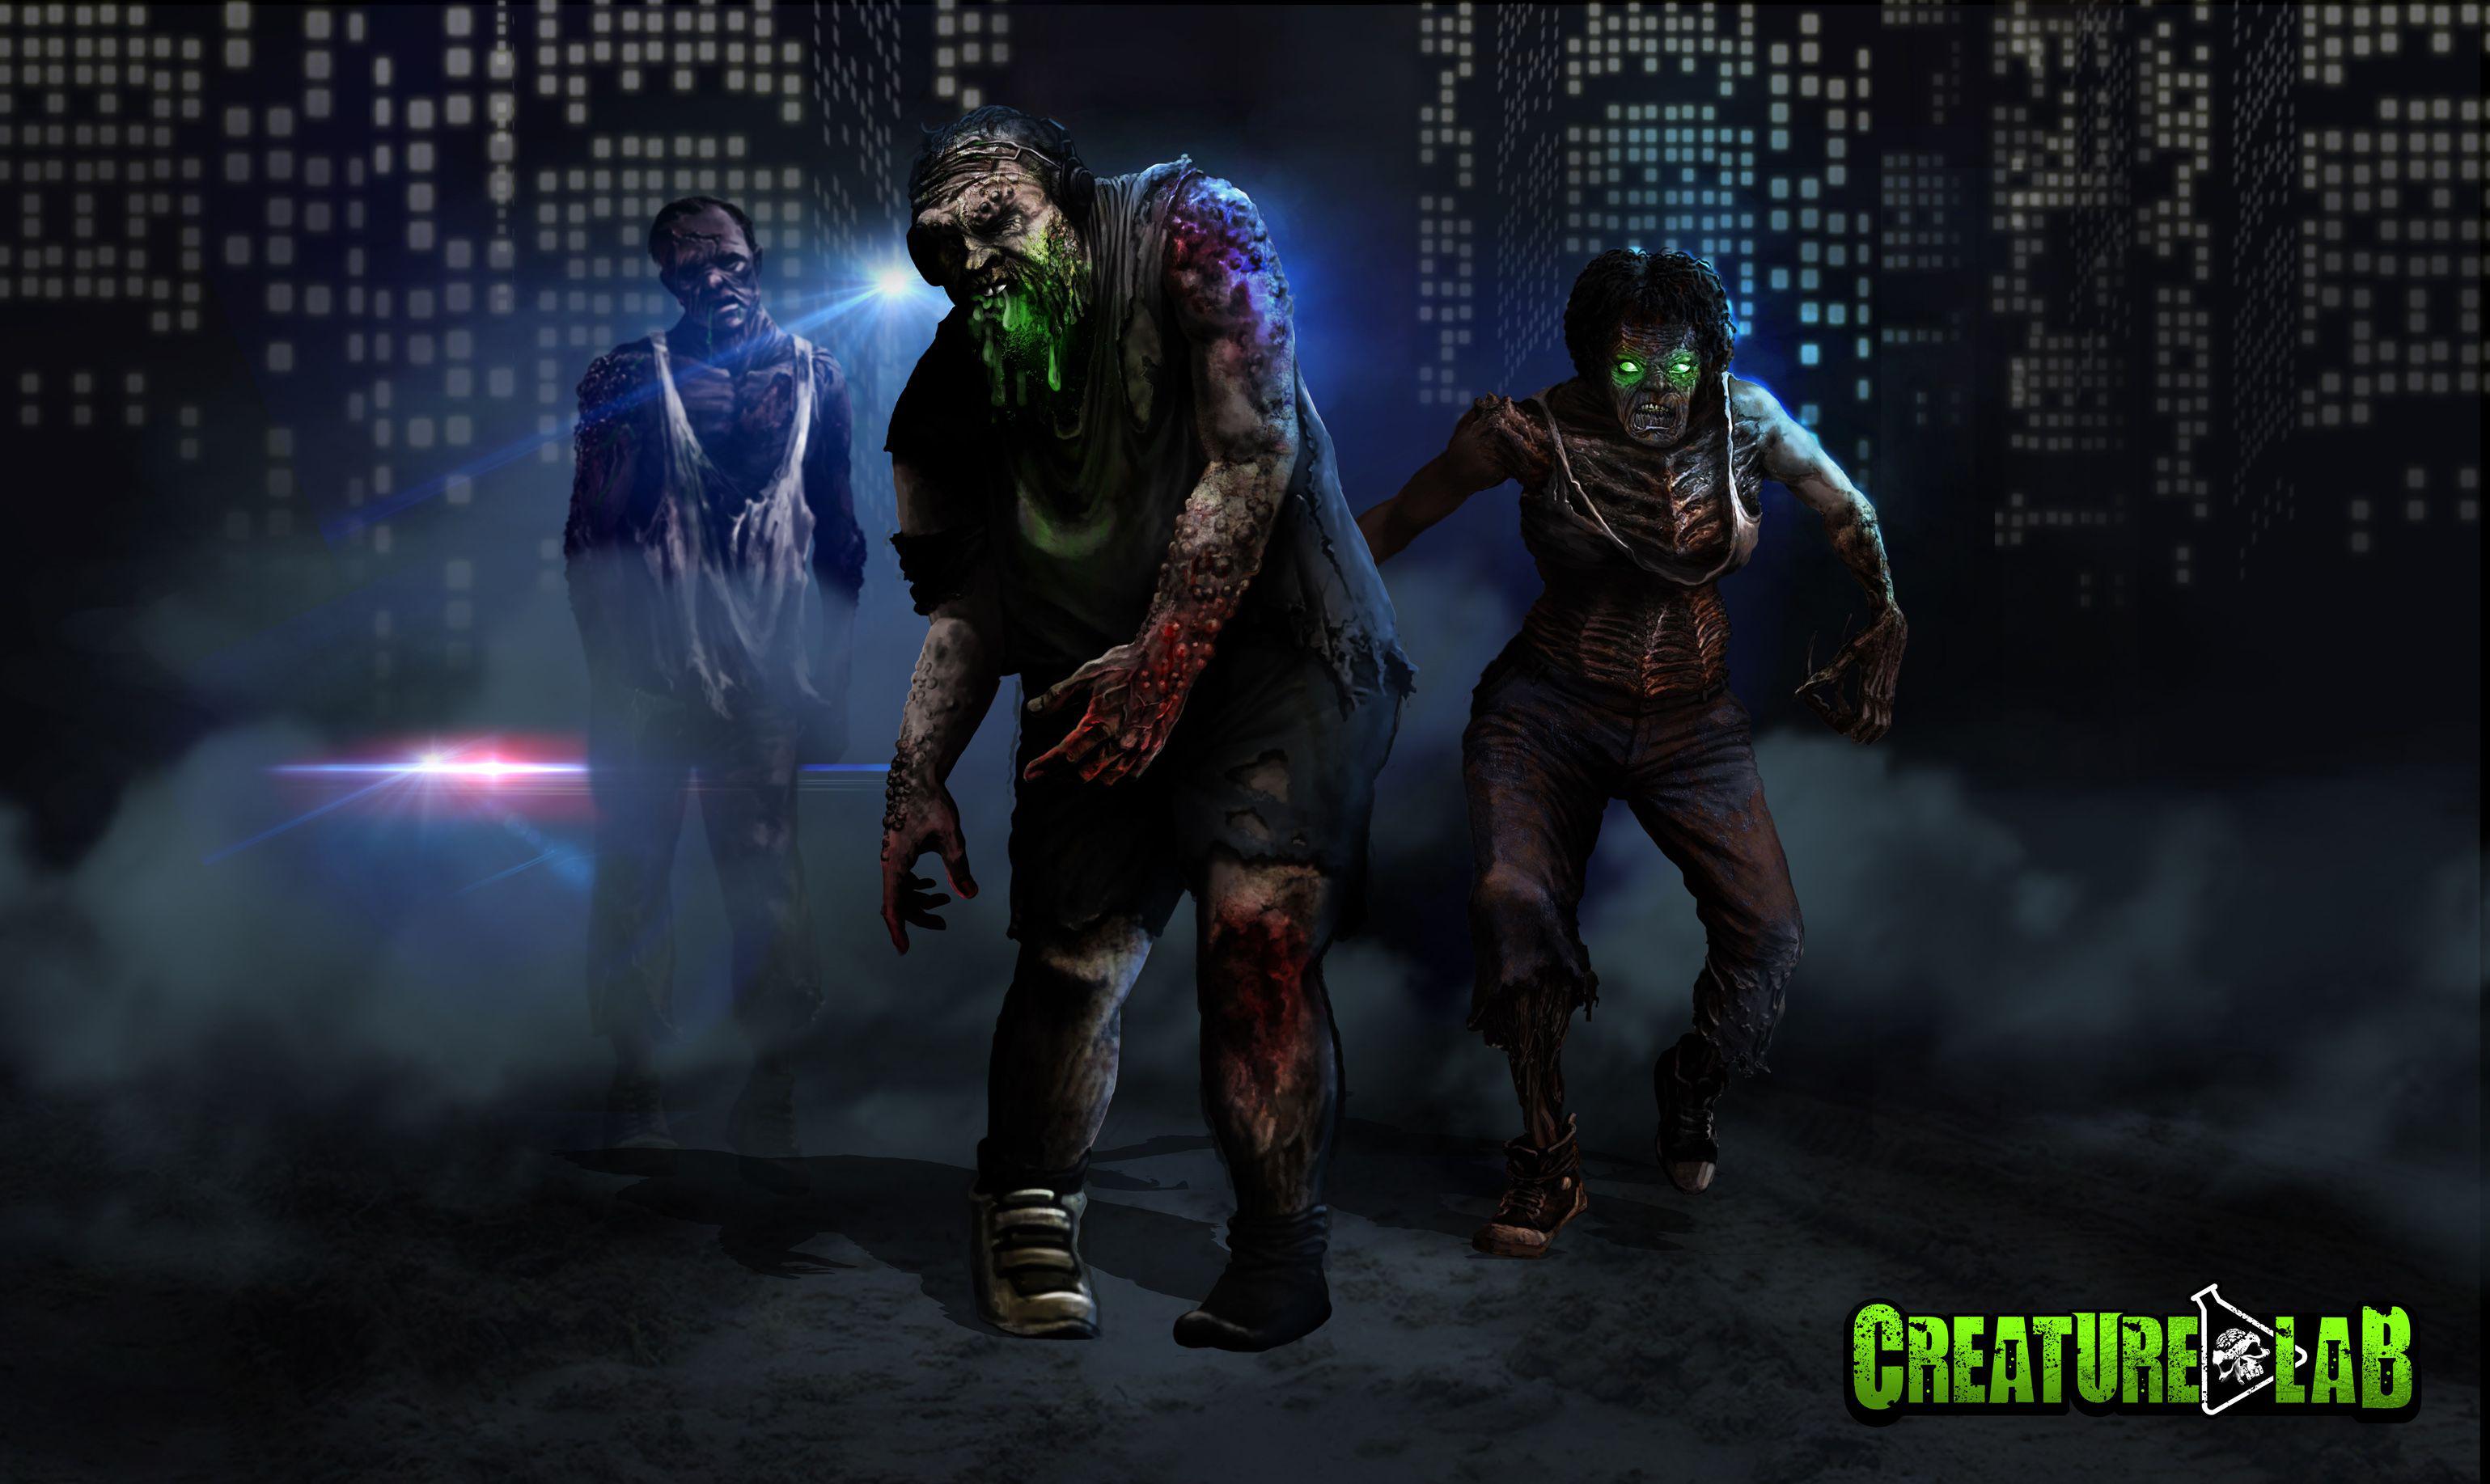 Kickstarter do Reverse Horror Game Creature Lab está explodindo